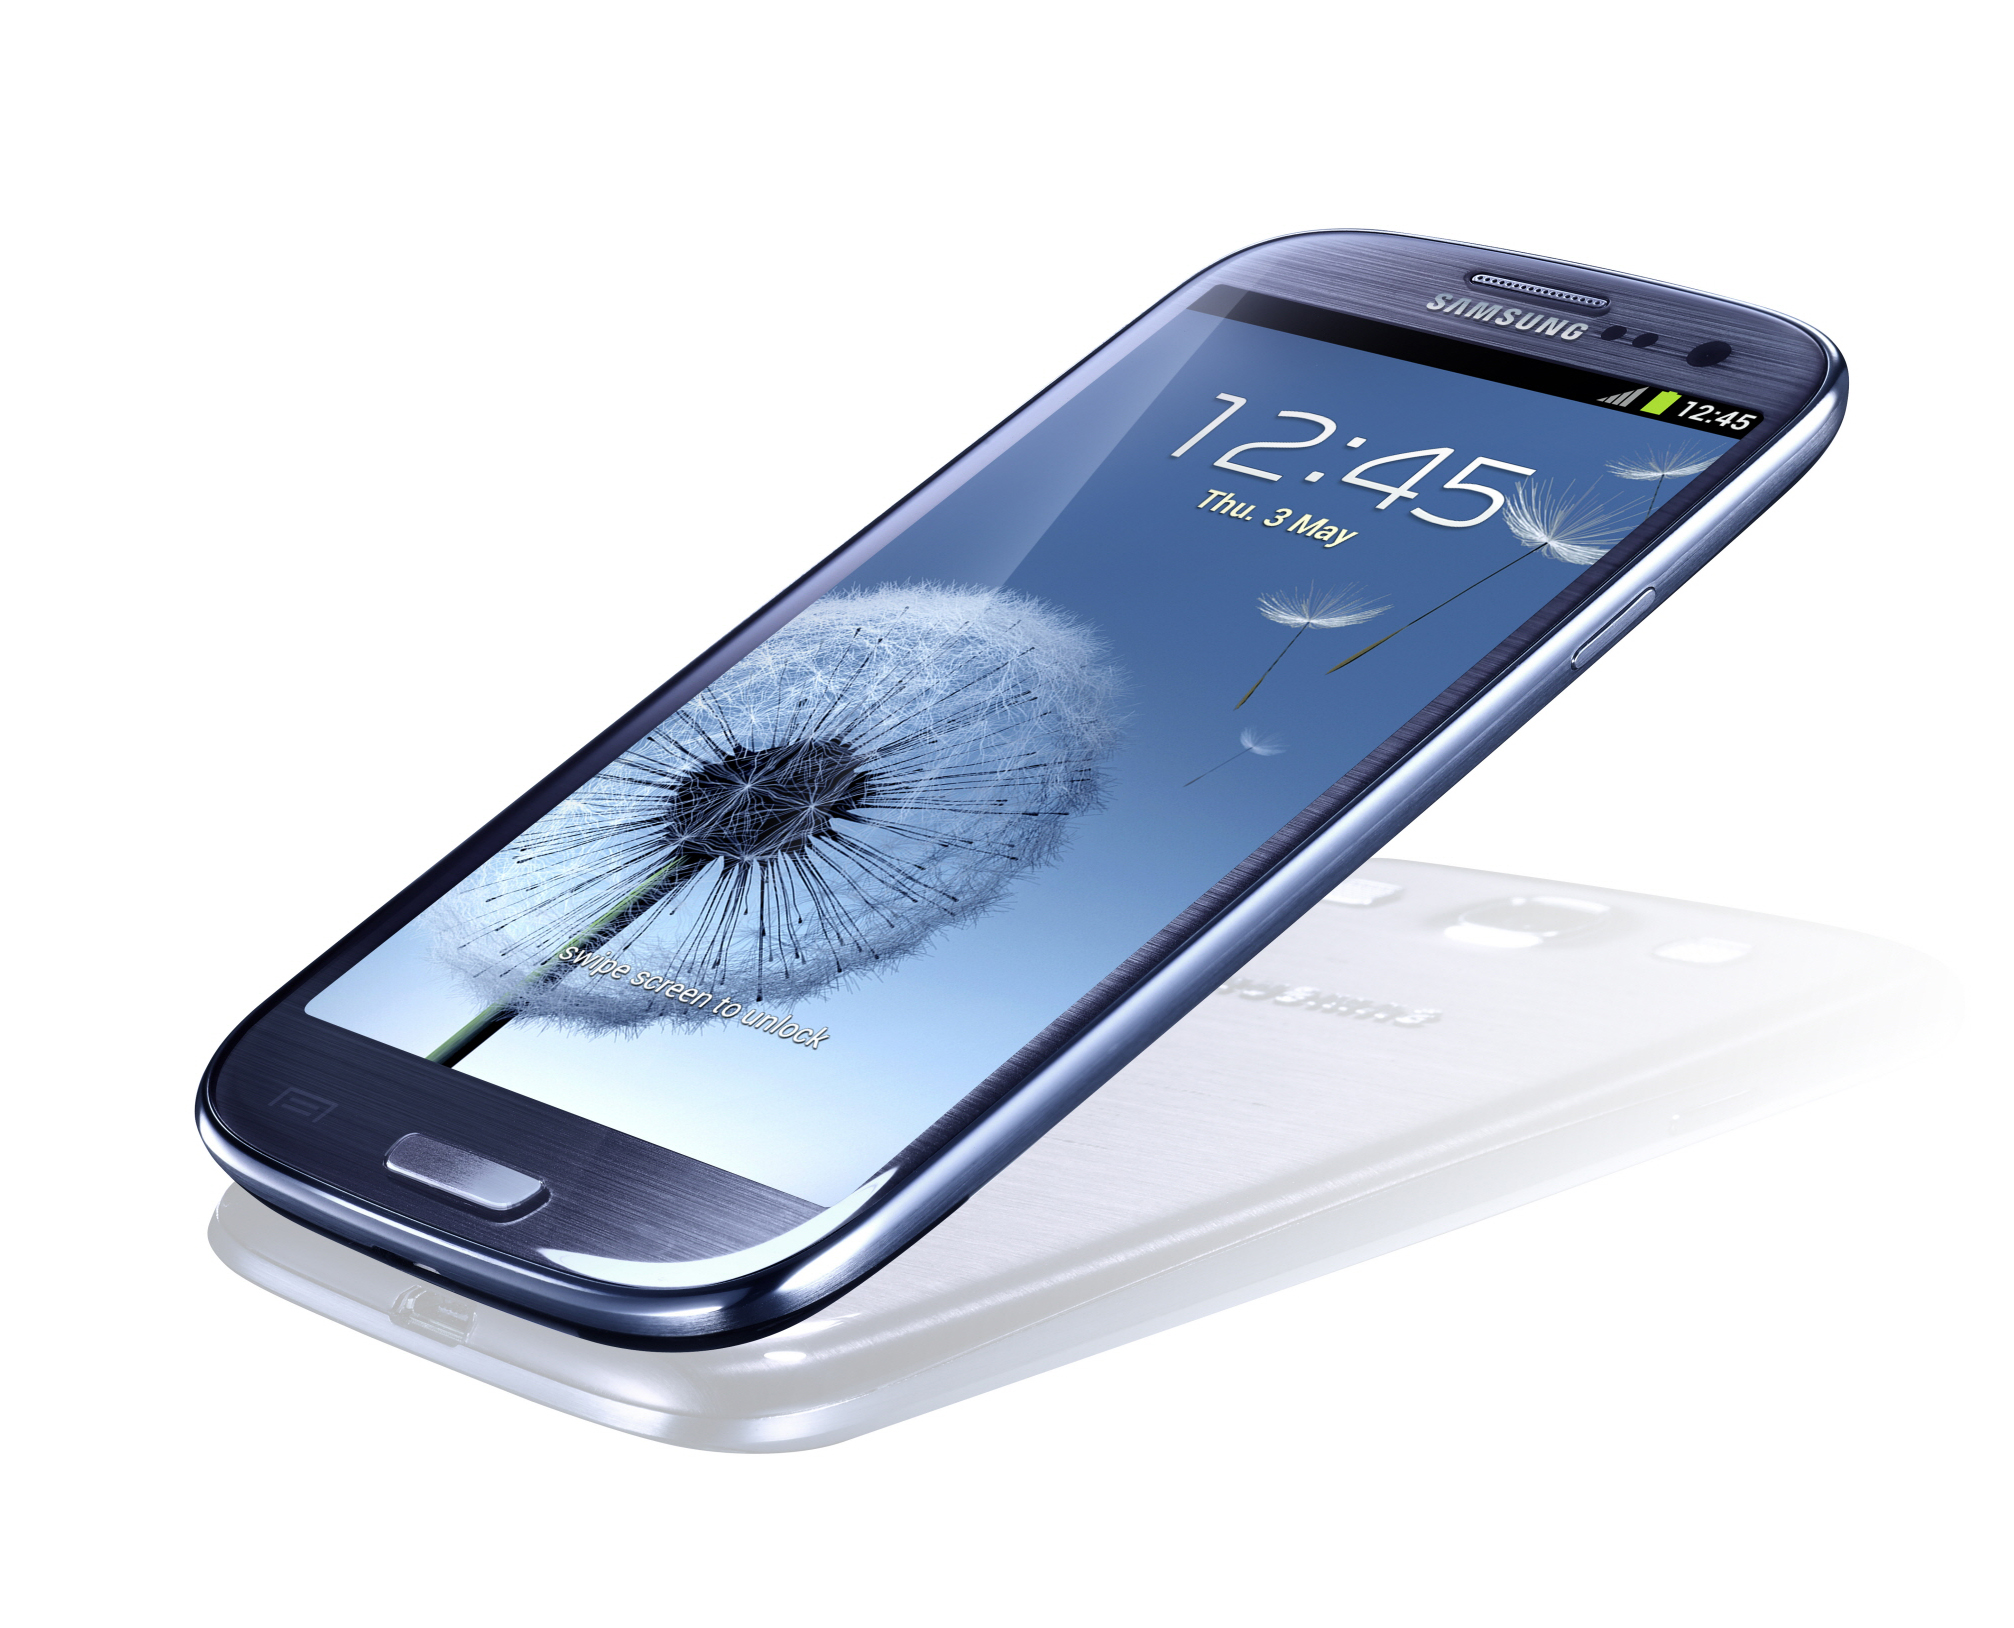 Galaxy S3 beskrivs som en supertelefon. 